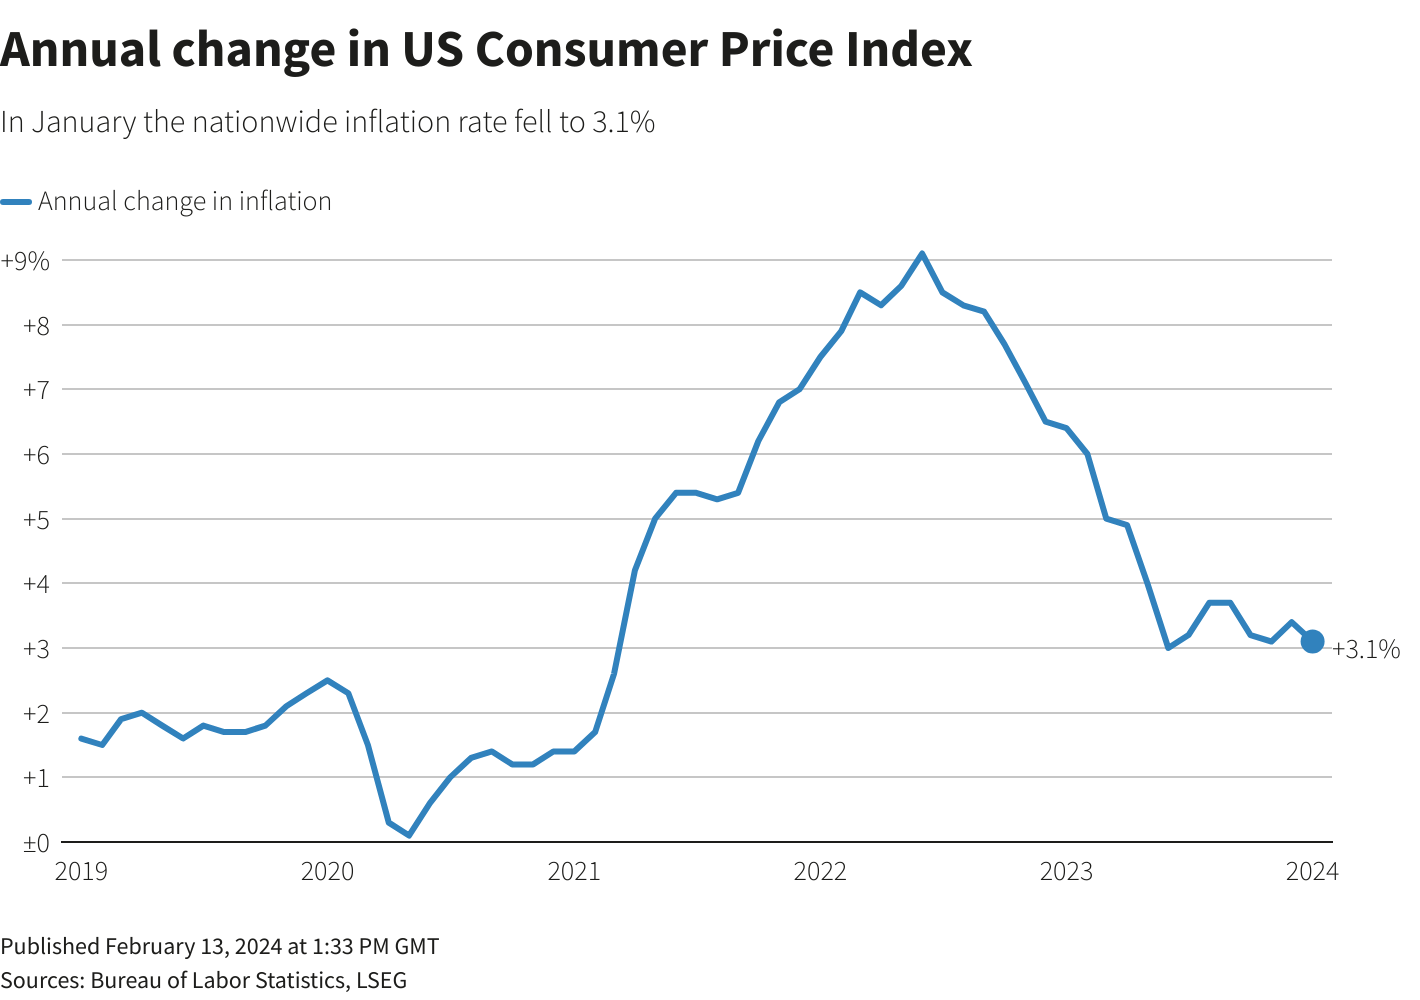 Lạm phát của Mỹ cũng đang trên đà giảm, hỗ trợ tốt cho sức mua của người dân - một tín hiệu vui cho hàng Việt Nam